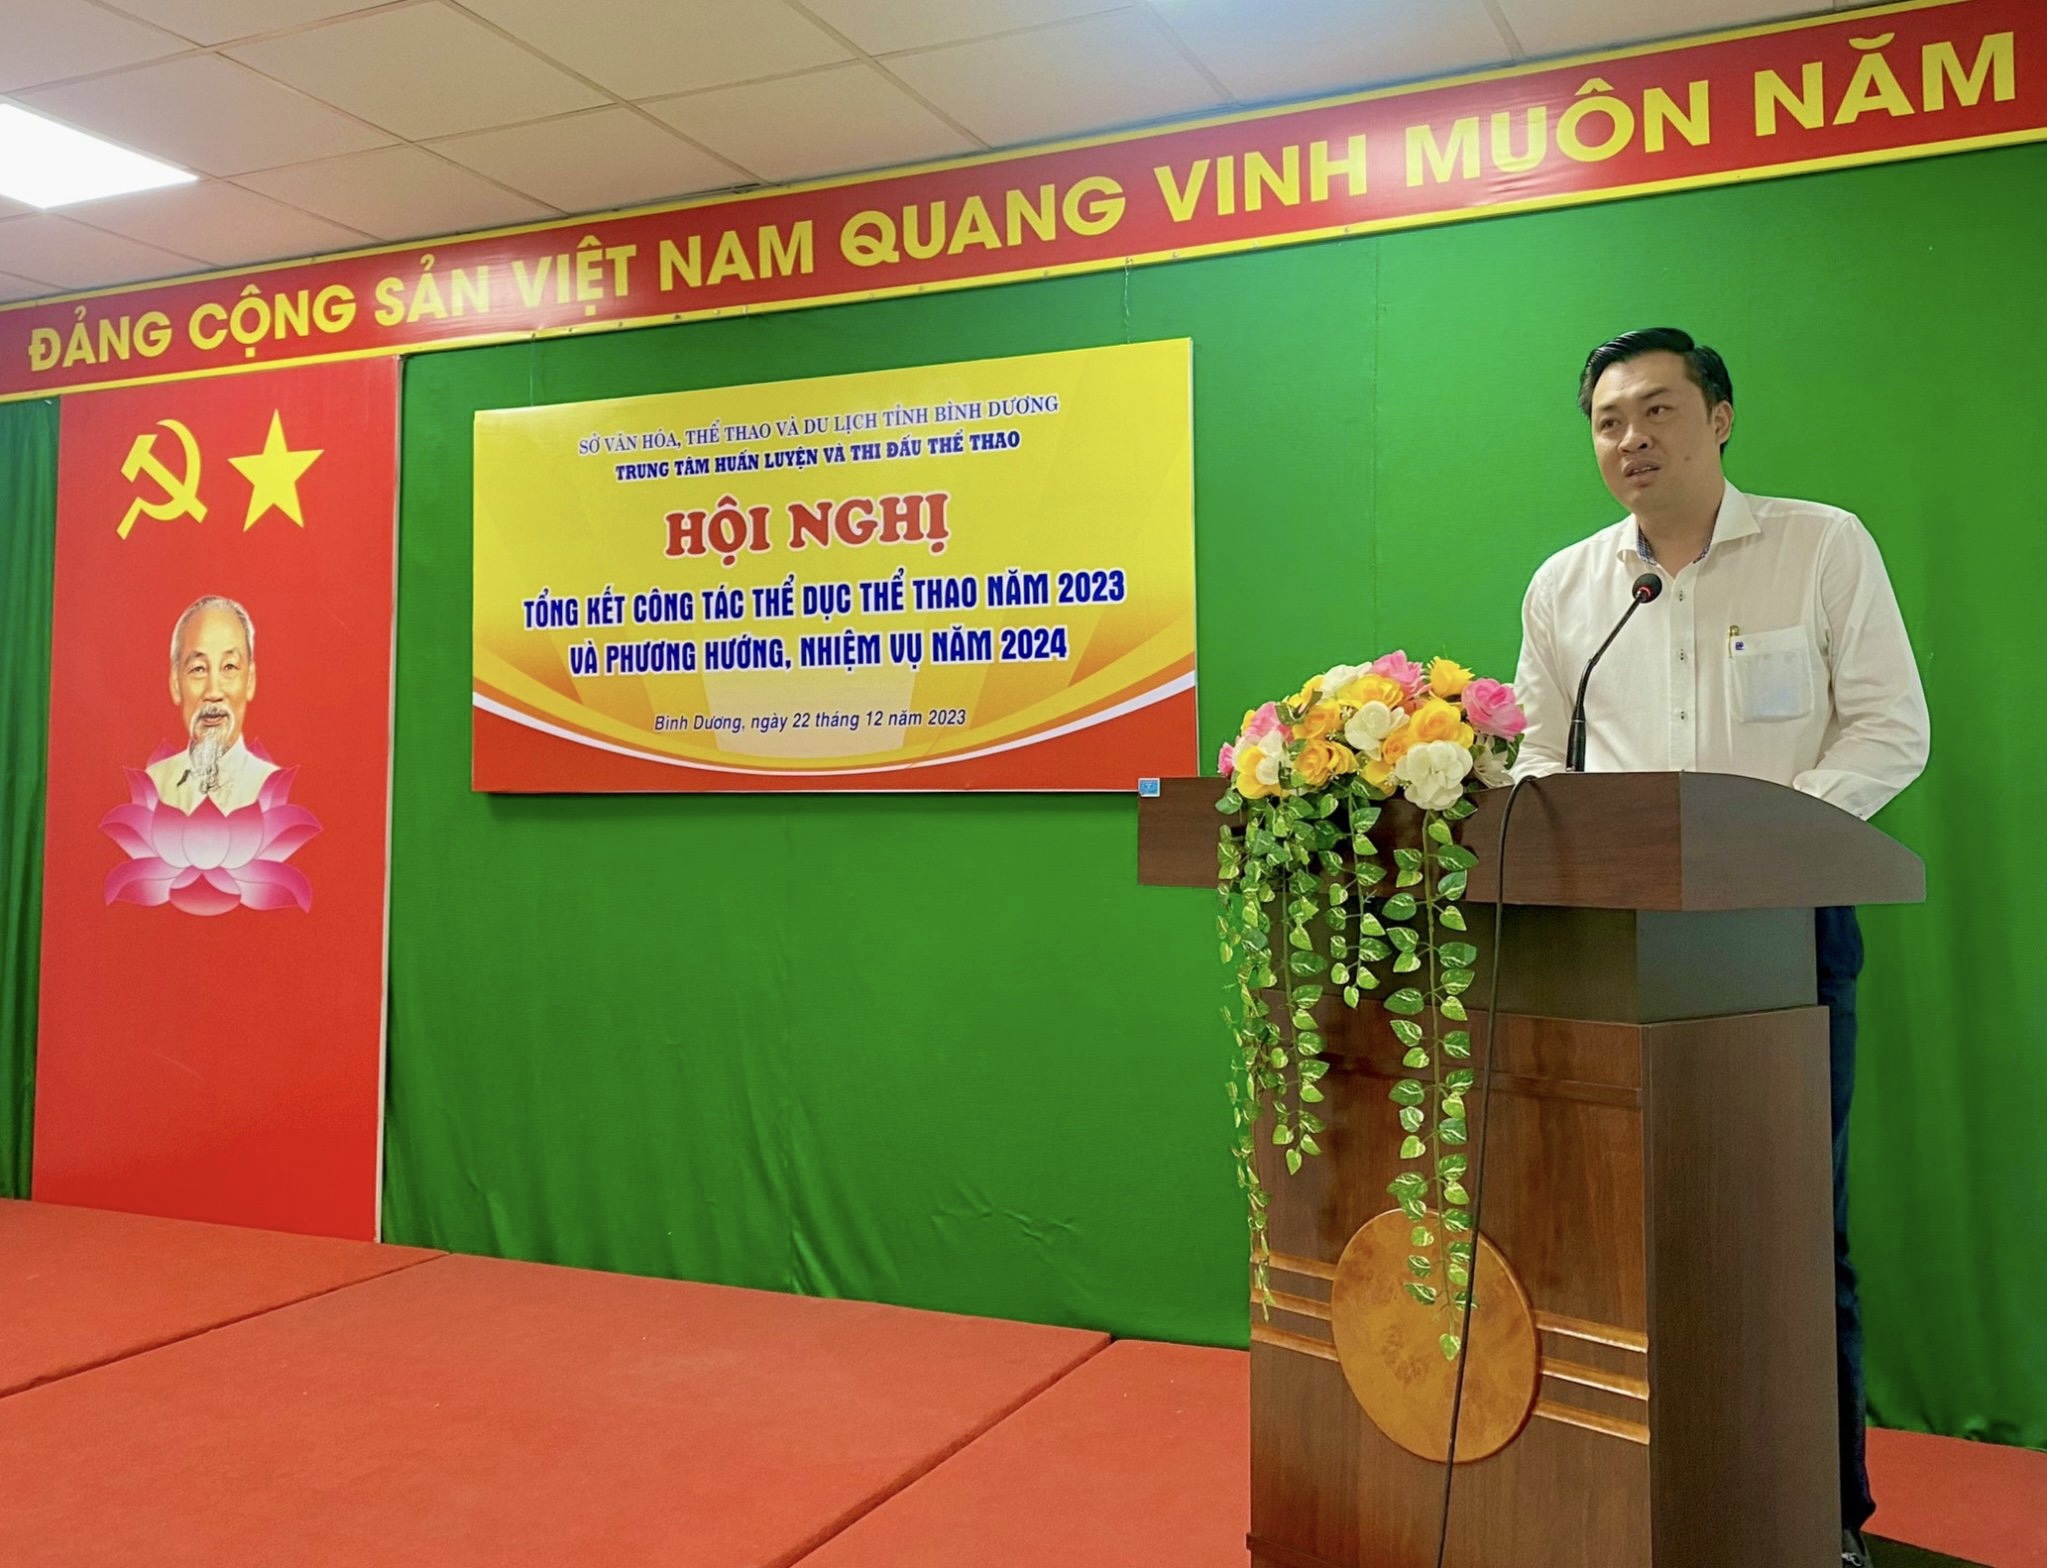 Ông Cao Văn Chóng - Phó Giám đốc Sở Văn hóa, Thể thao và Du lịch tỉnh Bình Dương phát biểu chỉ đạo hội nghị